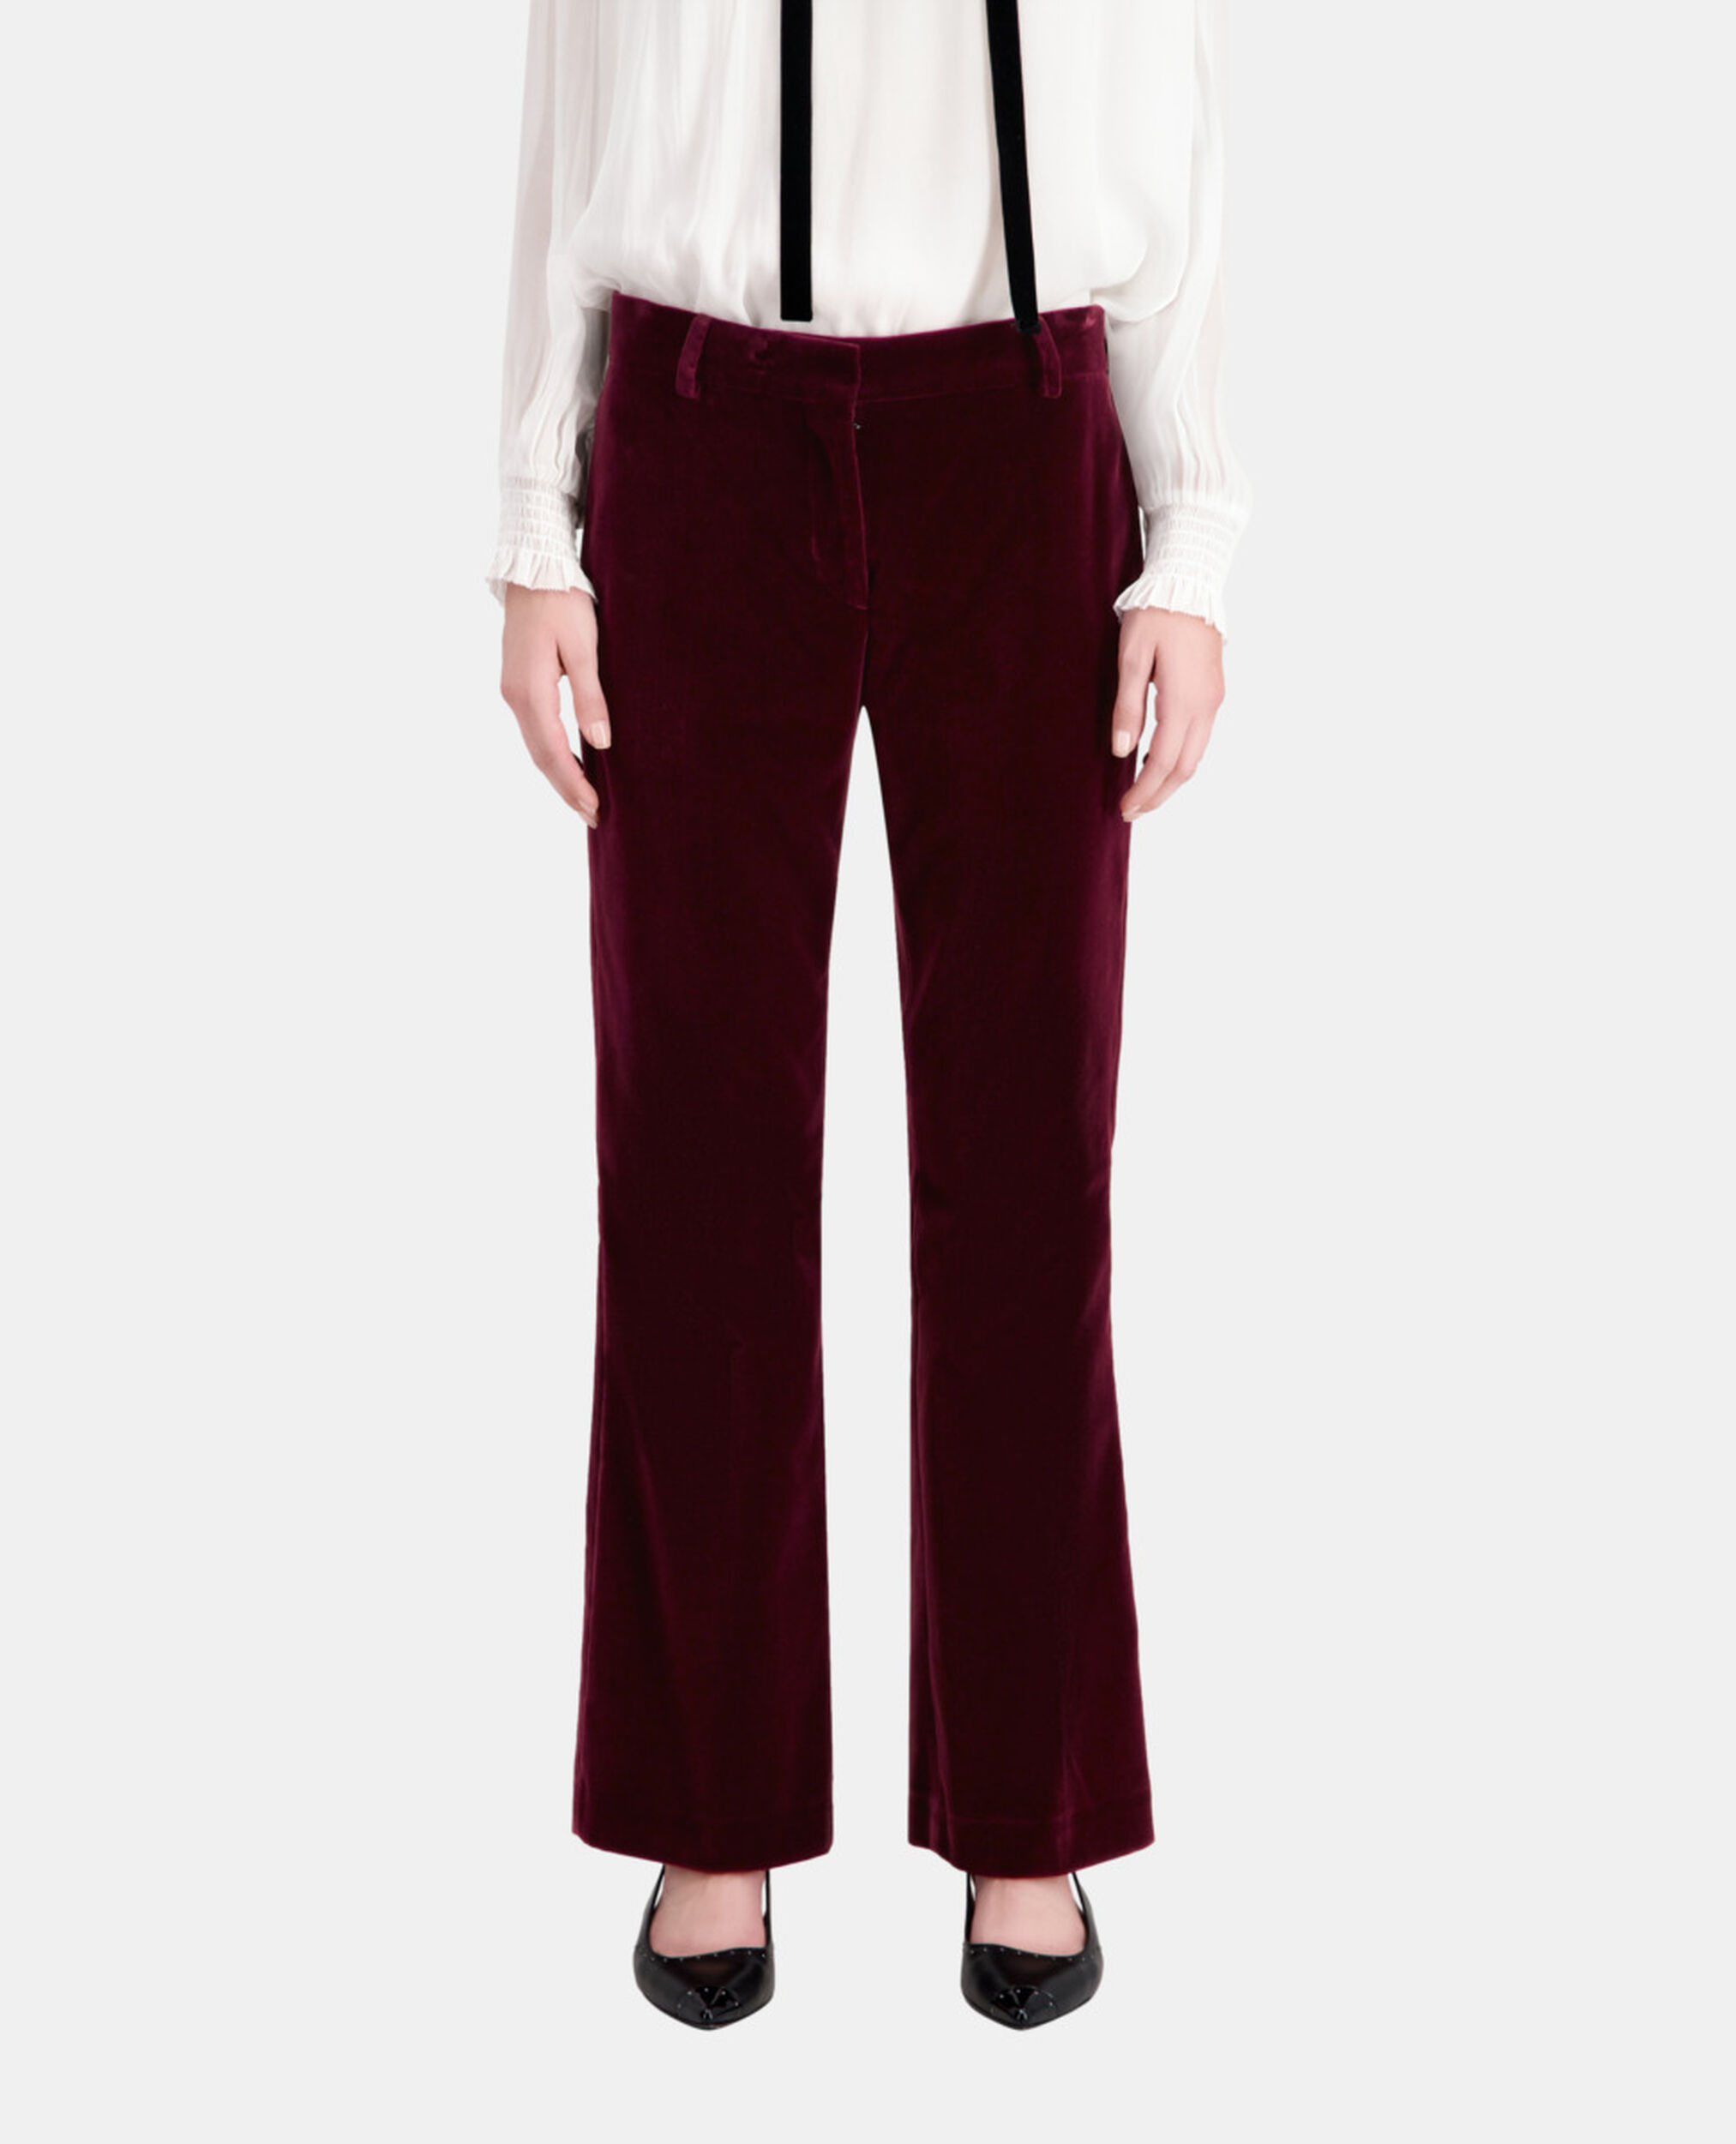 Pantalon tailleur bordeaux en velours, BURGUNDY, hi-res image number null